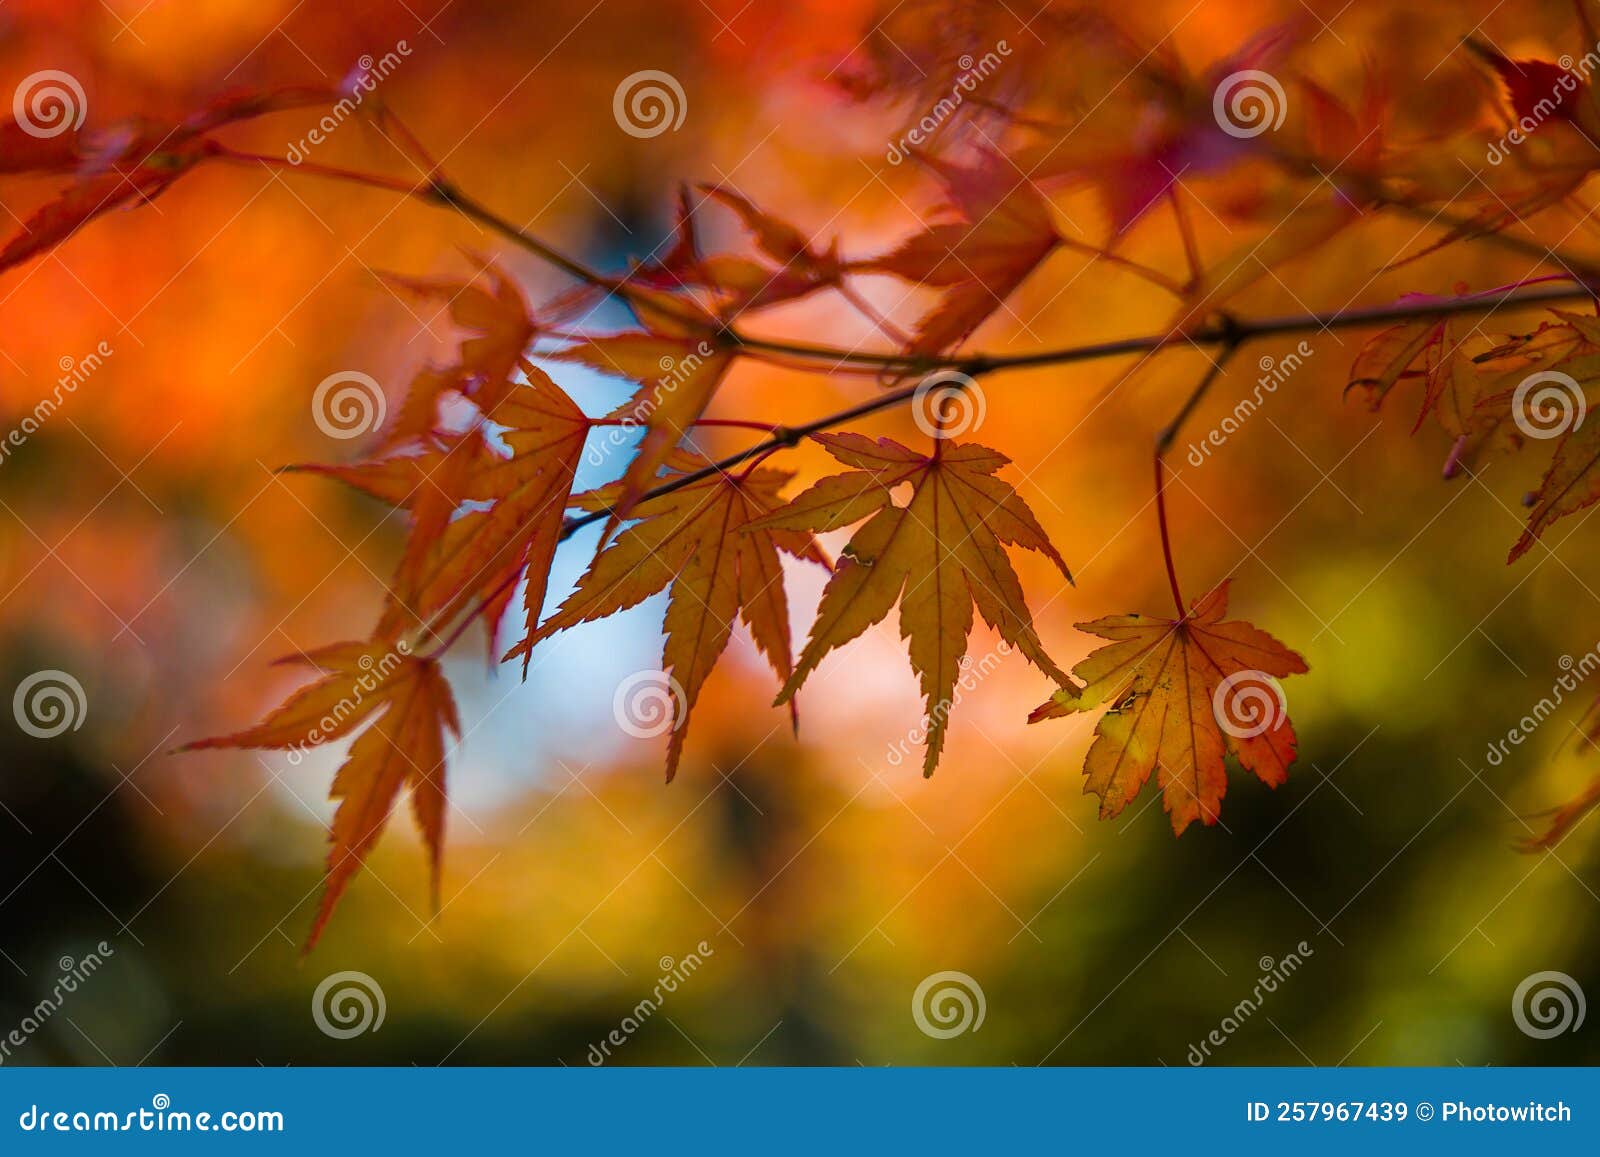 foliage of japanese maple tree